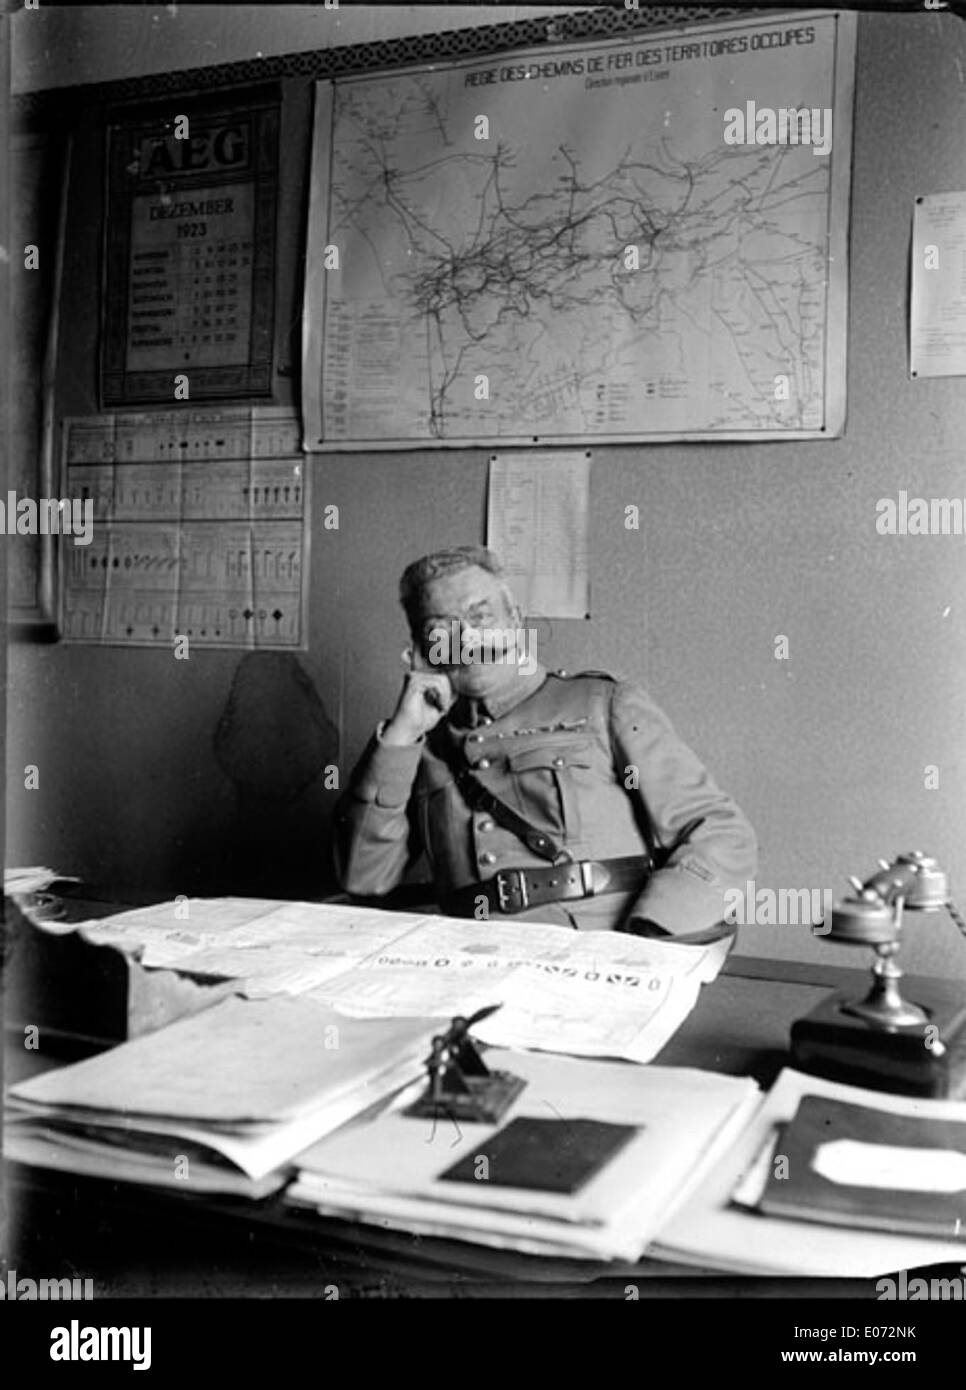 Officier militaire assis à hijo mesa, Régie des chemins de fer, Essen (Allemagne), décembre 1923 Foto de stock